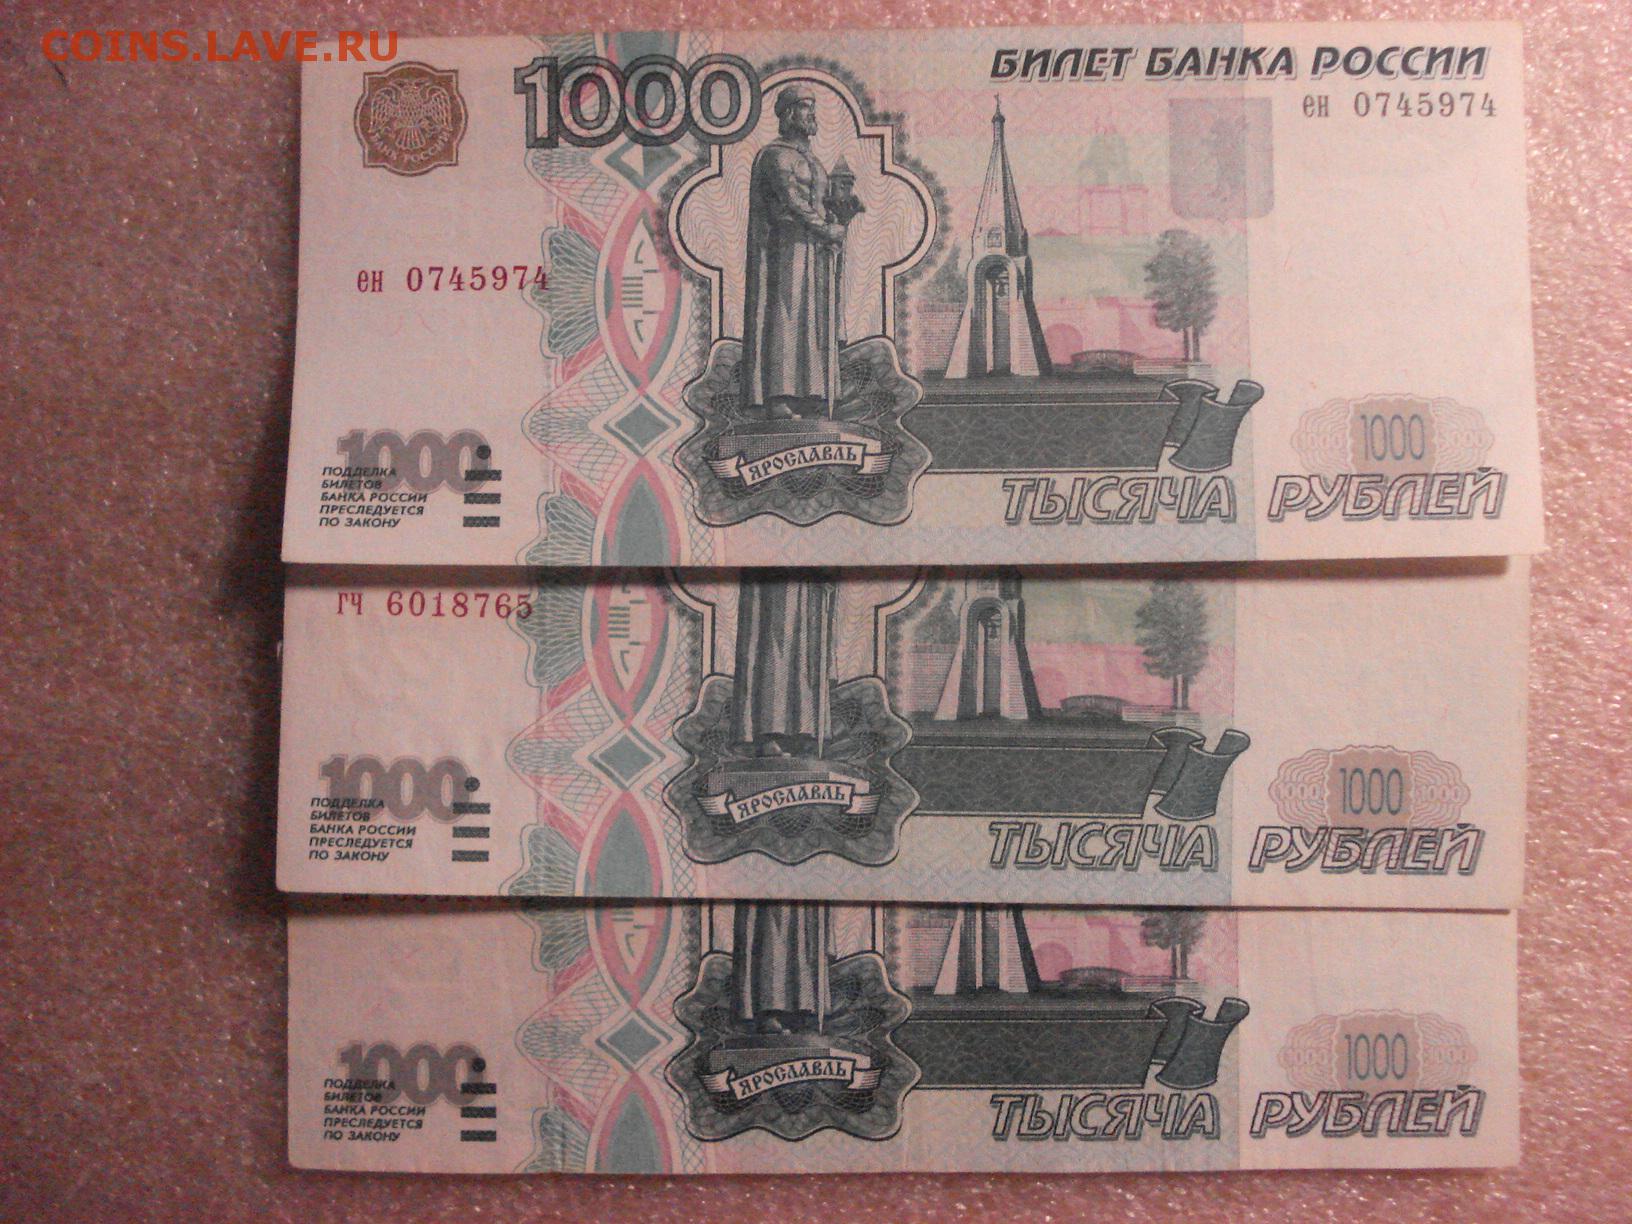 Редкие 1000 рублей. Редкие 1000 рублевые купюры 1997 года. Редкие купюры 1000 рублей. 1000 Рублей модификации модифицированная 1997 года. Редкие купюры в 1000 руб.